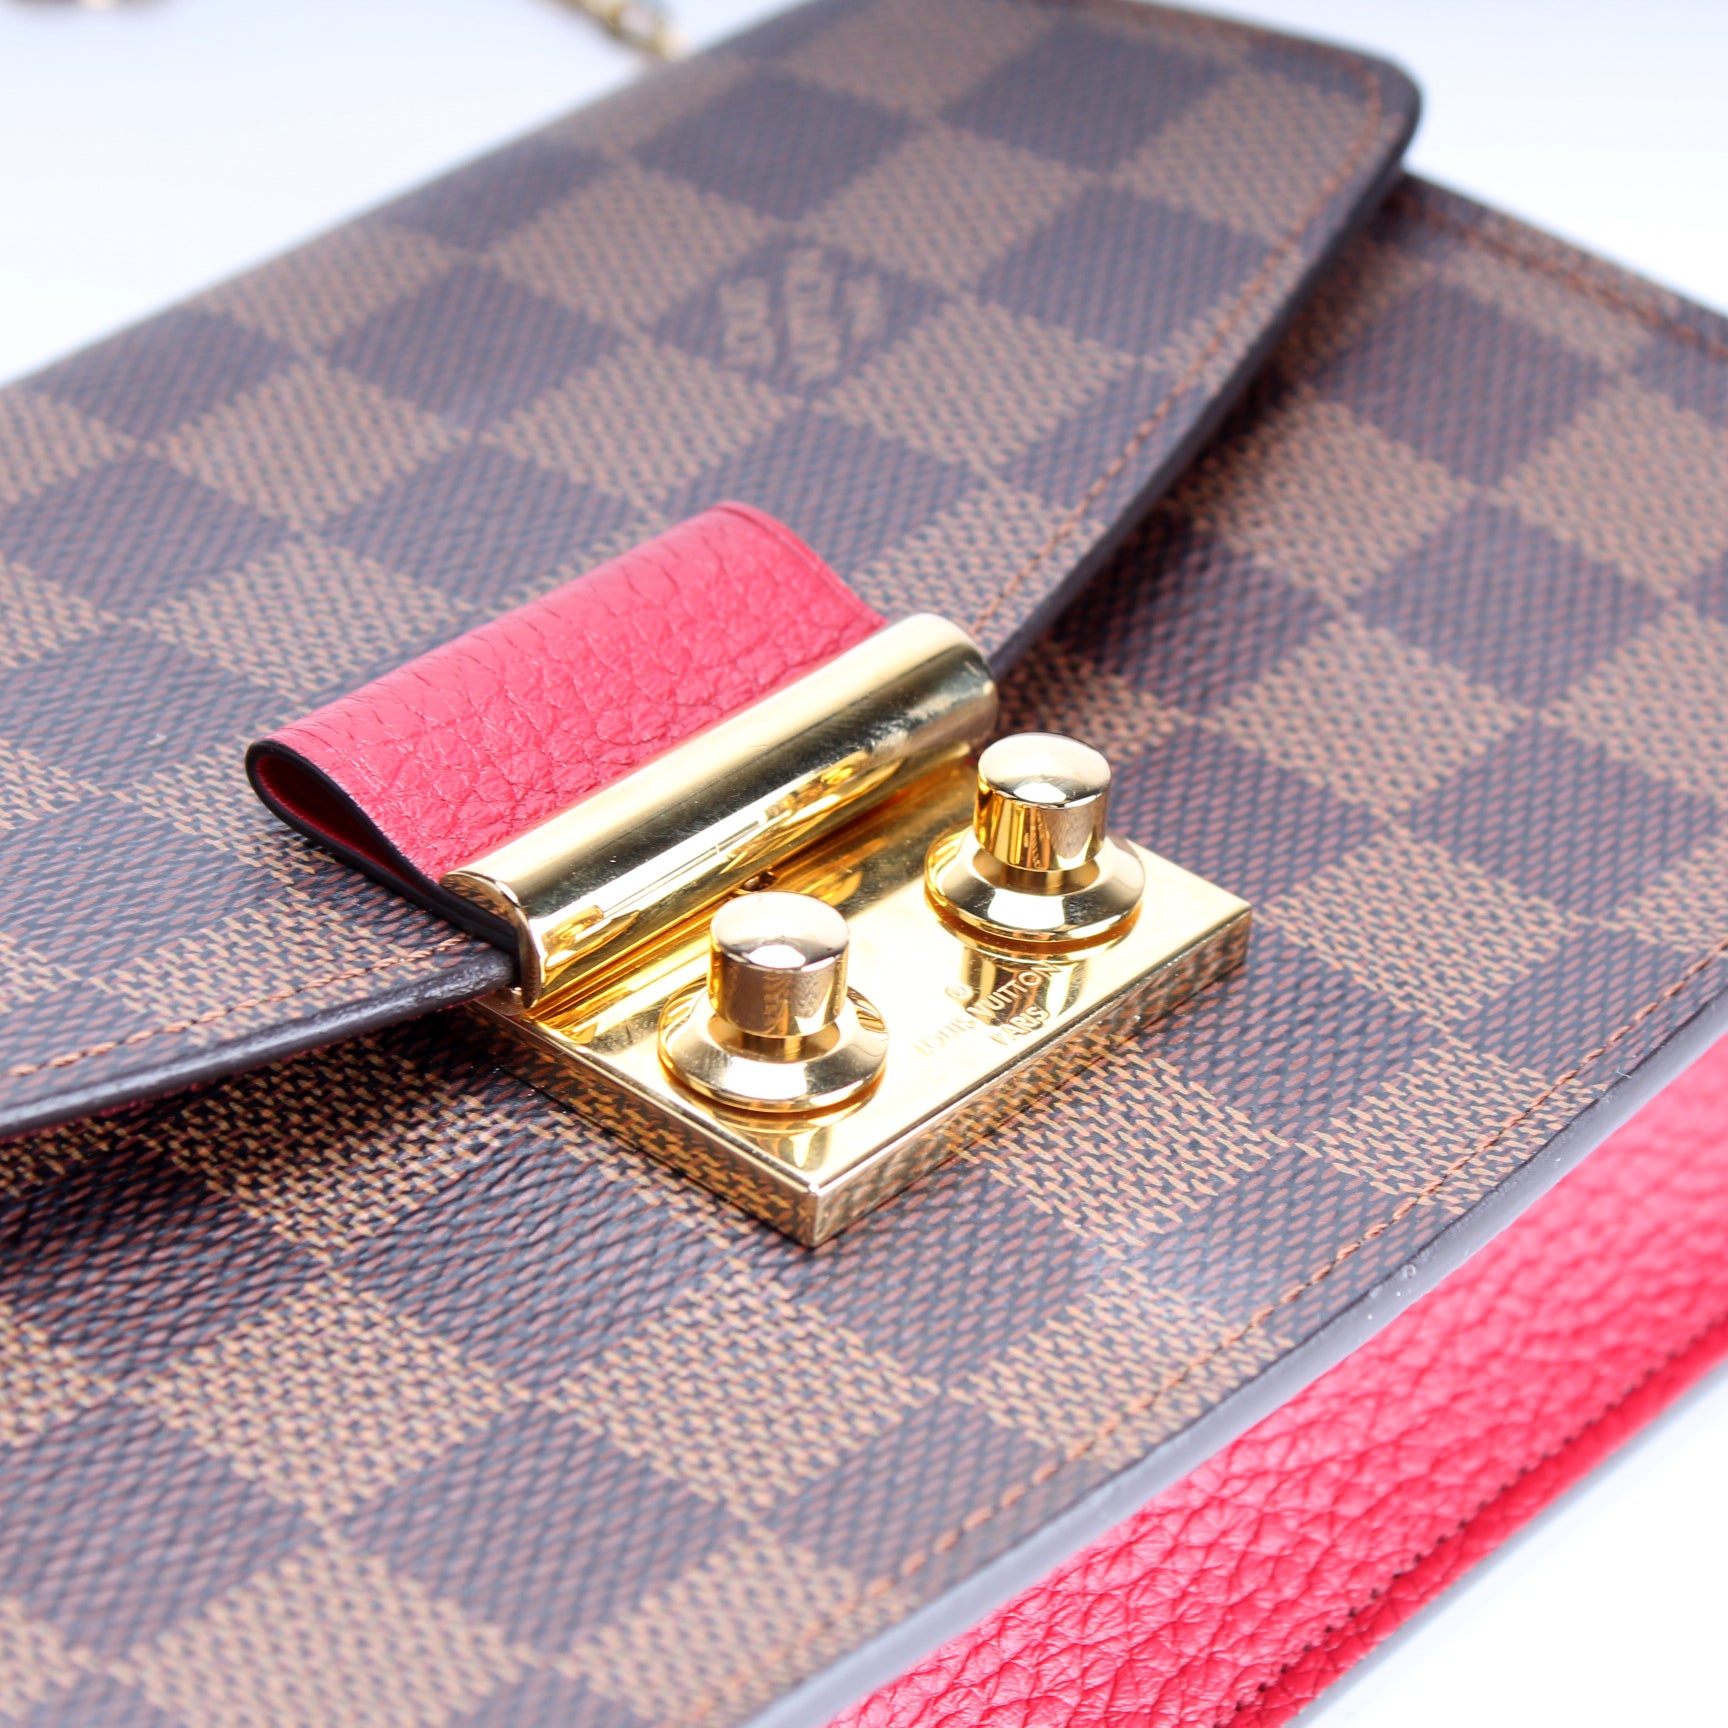 Croisette Chain Wallet NM Damier Ebene – Keeks Designer Handbags